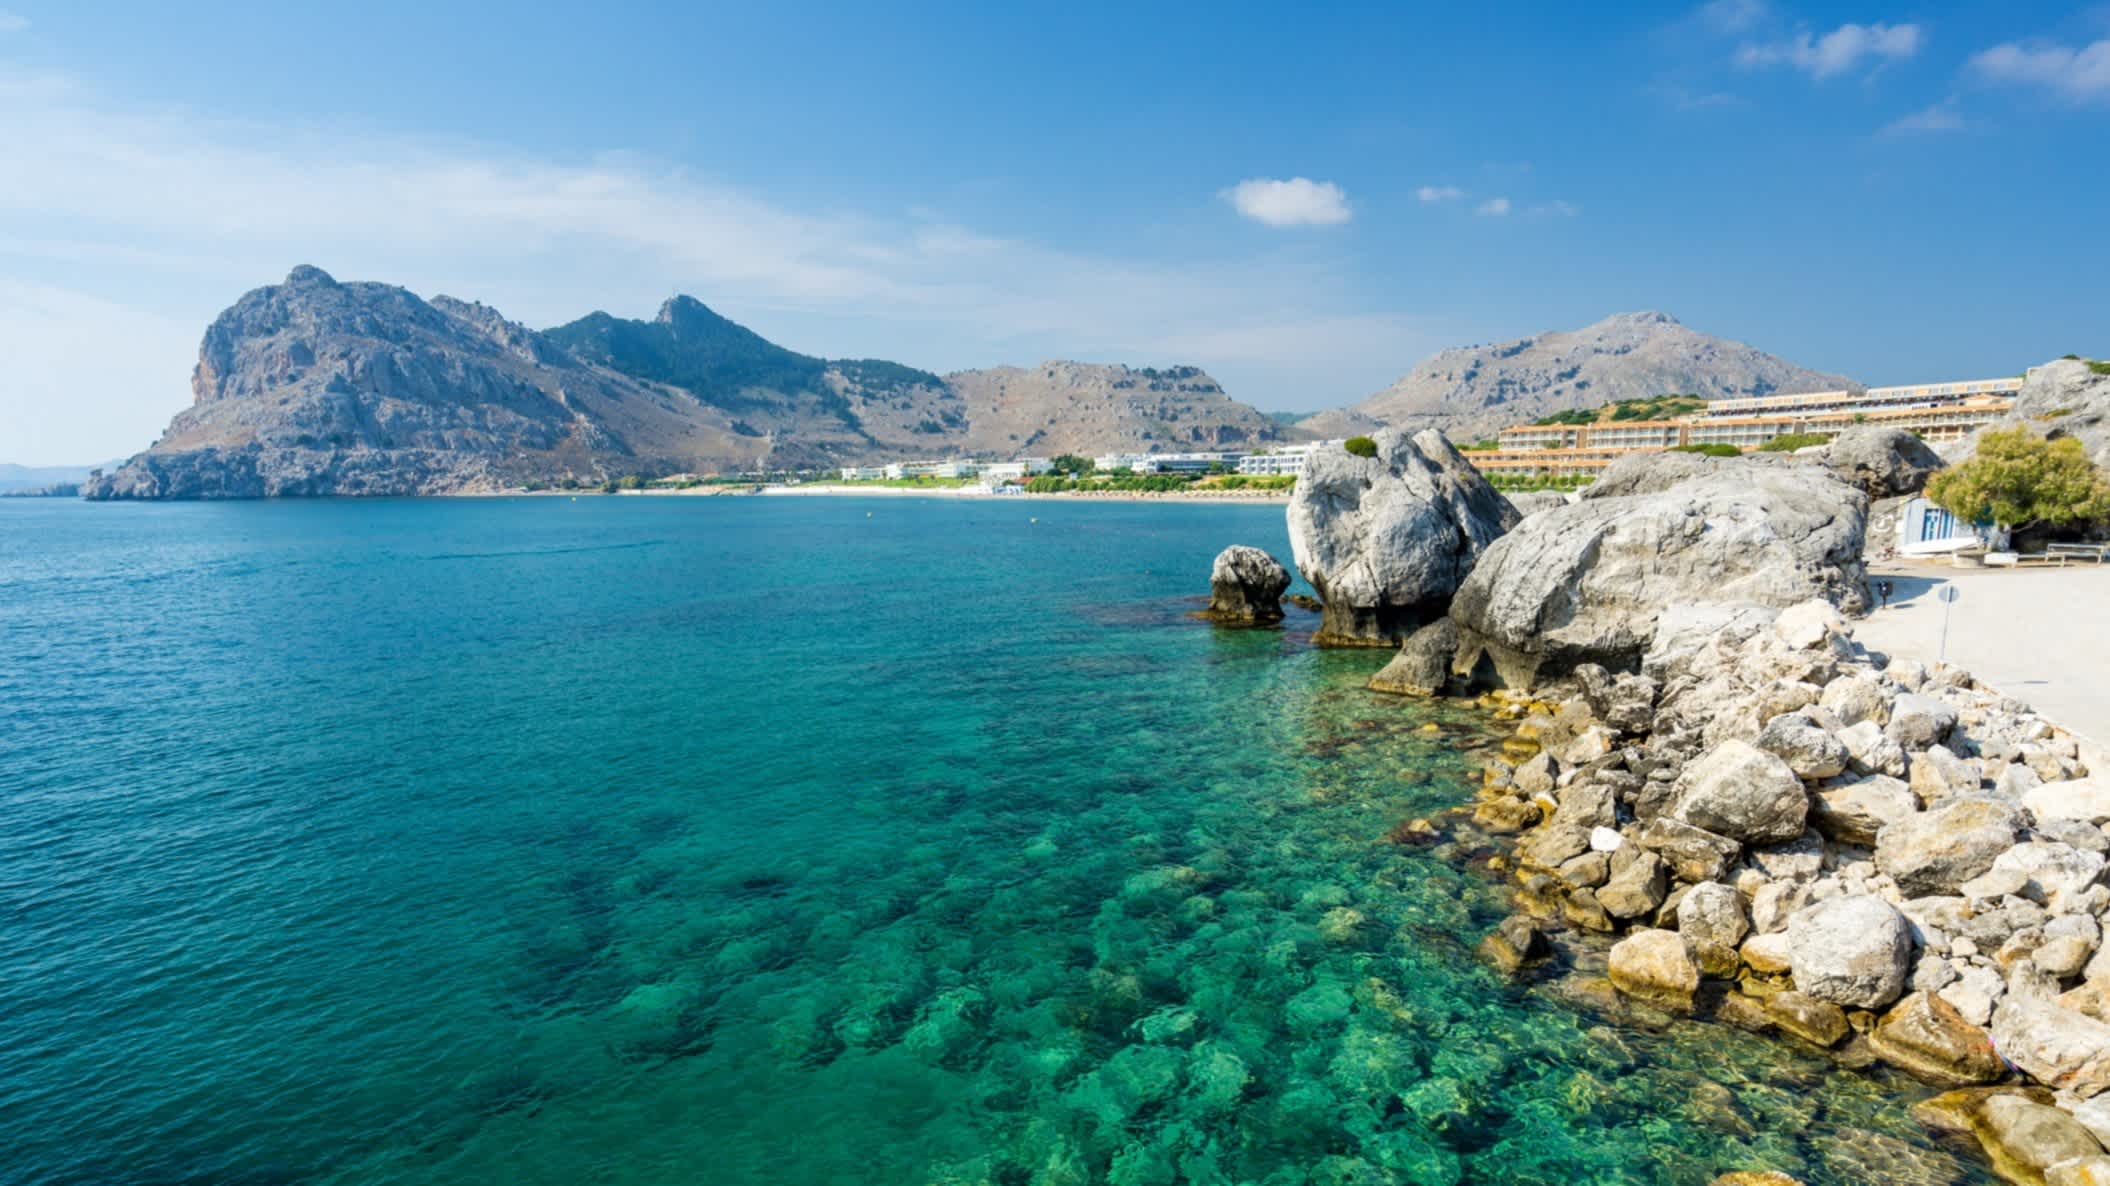 Die Küstenlandschaft bei Kolymbia auf der griechischen Insel Rhodos, Griechenland bei Sonnenschein, blauem Himmel und mit Felsküsten im Hintergrund.

